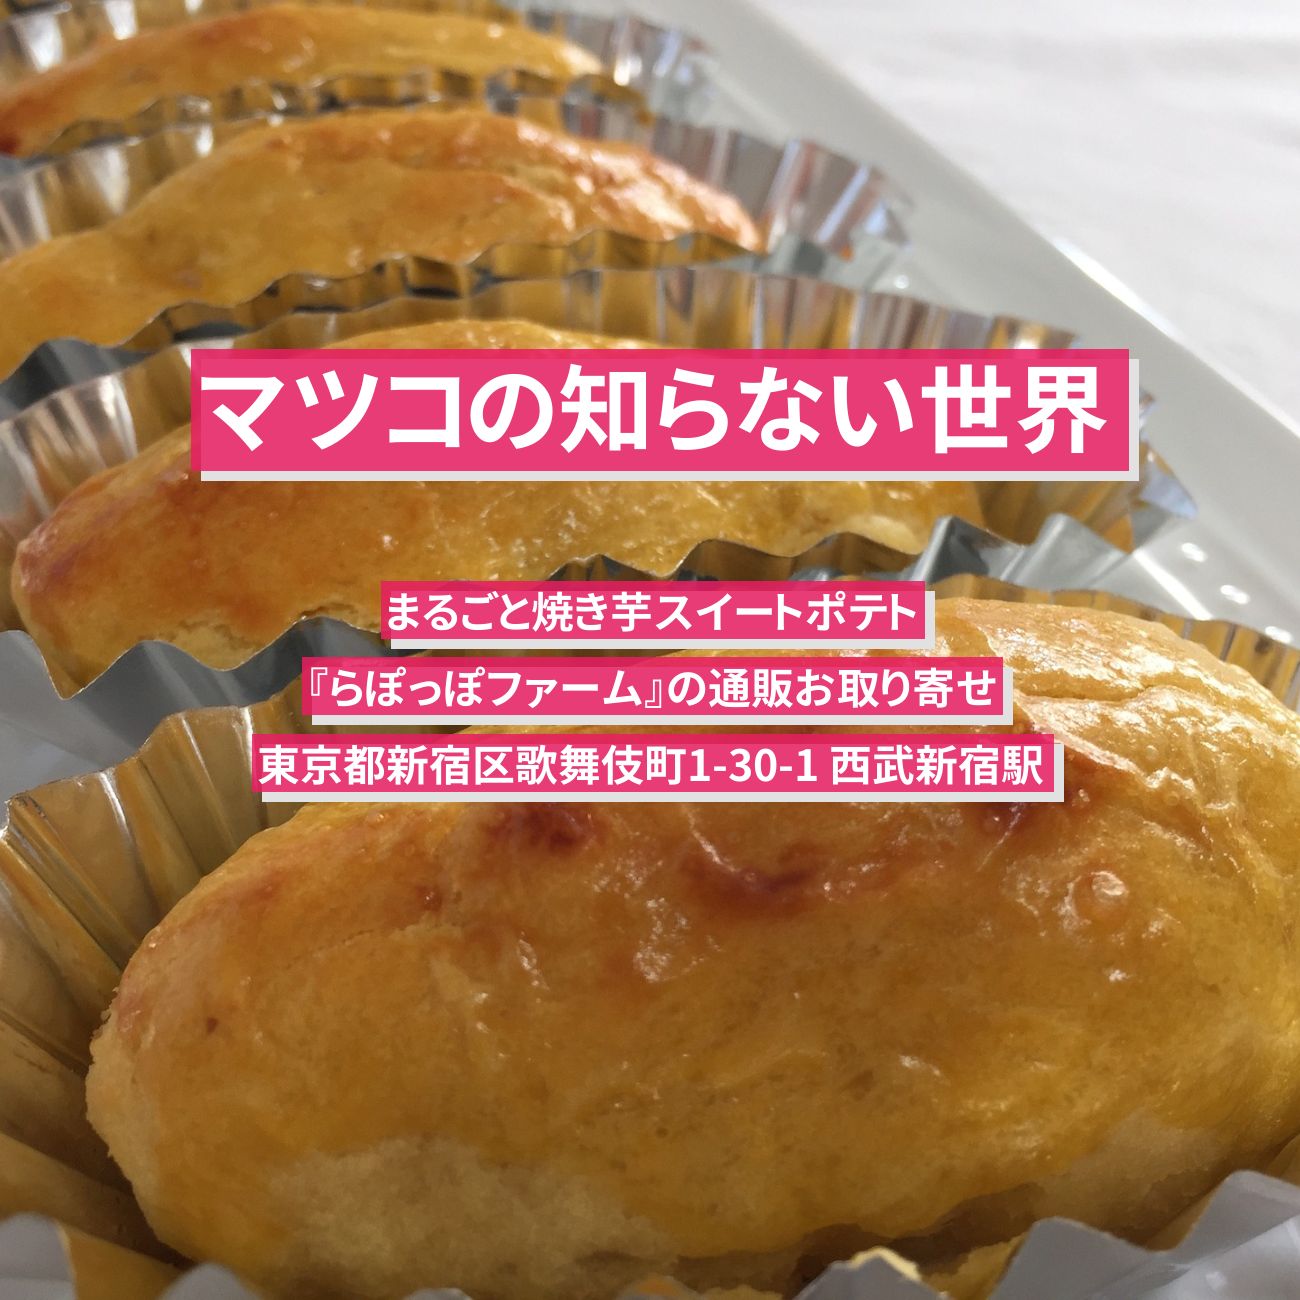 【マツコの知らない世界】まるごと焼き芋スイートポテト『らぽっぽファーム』の通販お取り寄せ